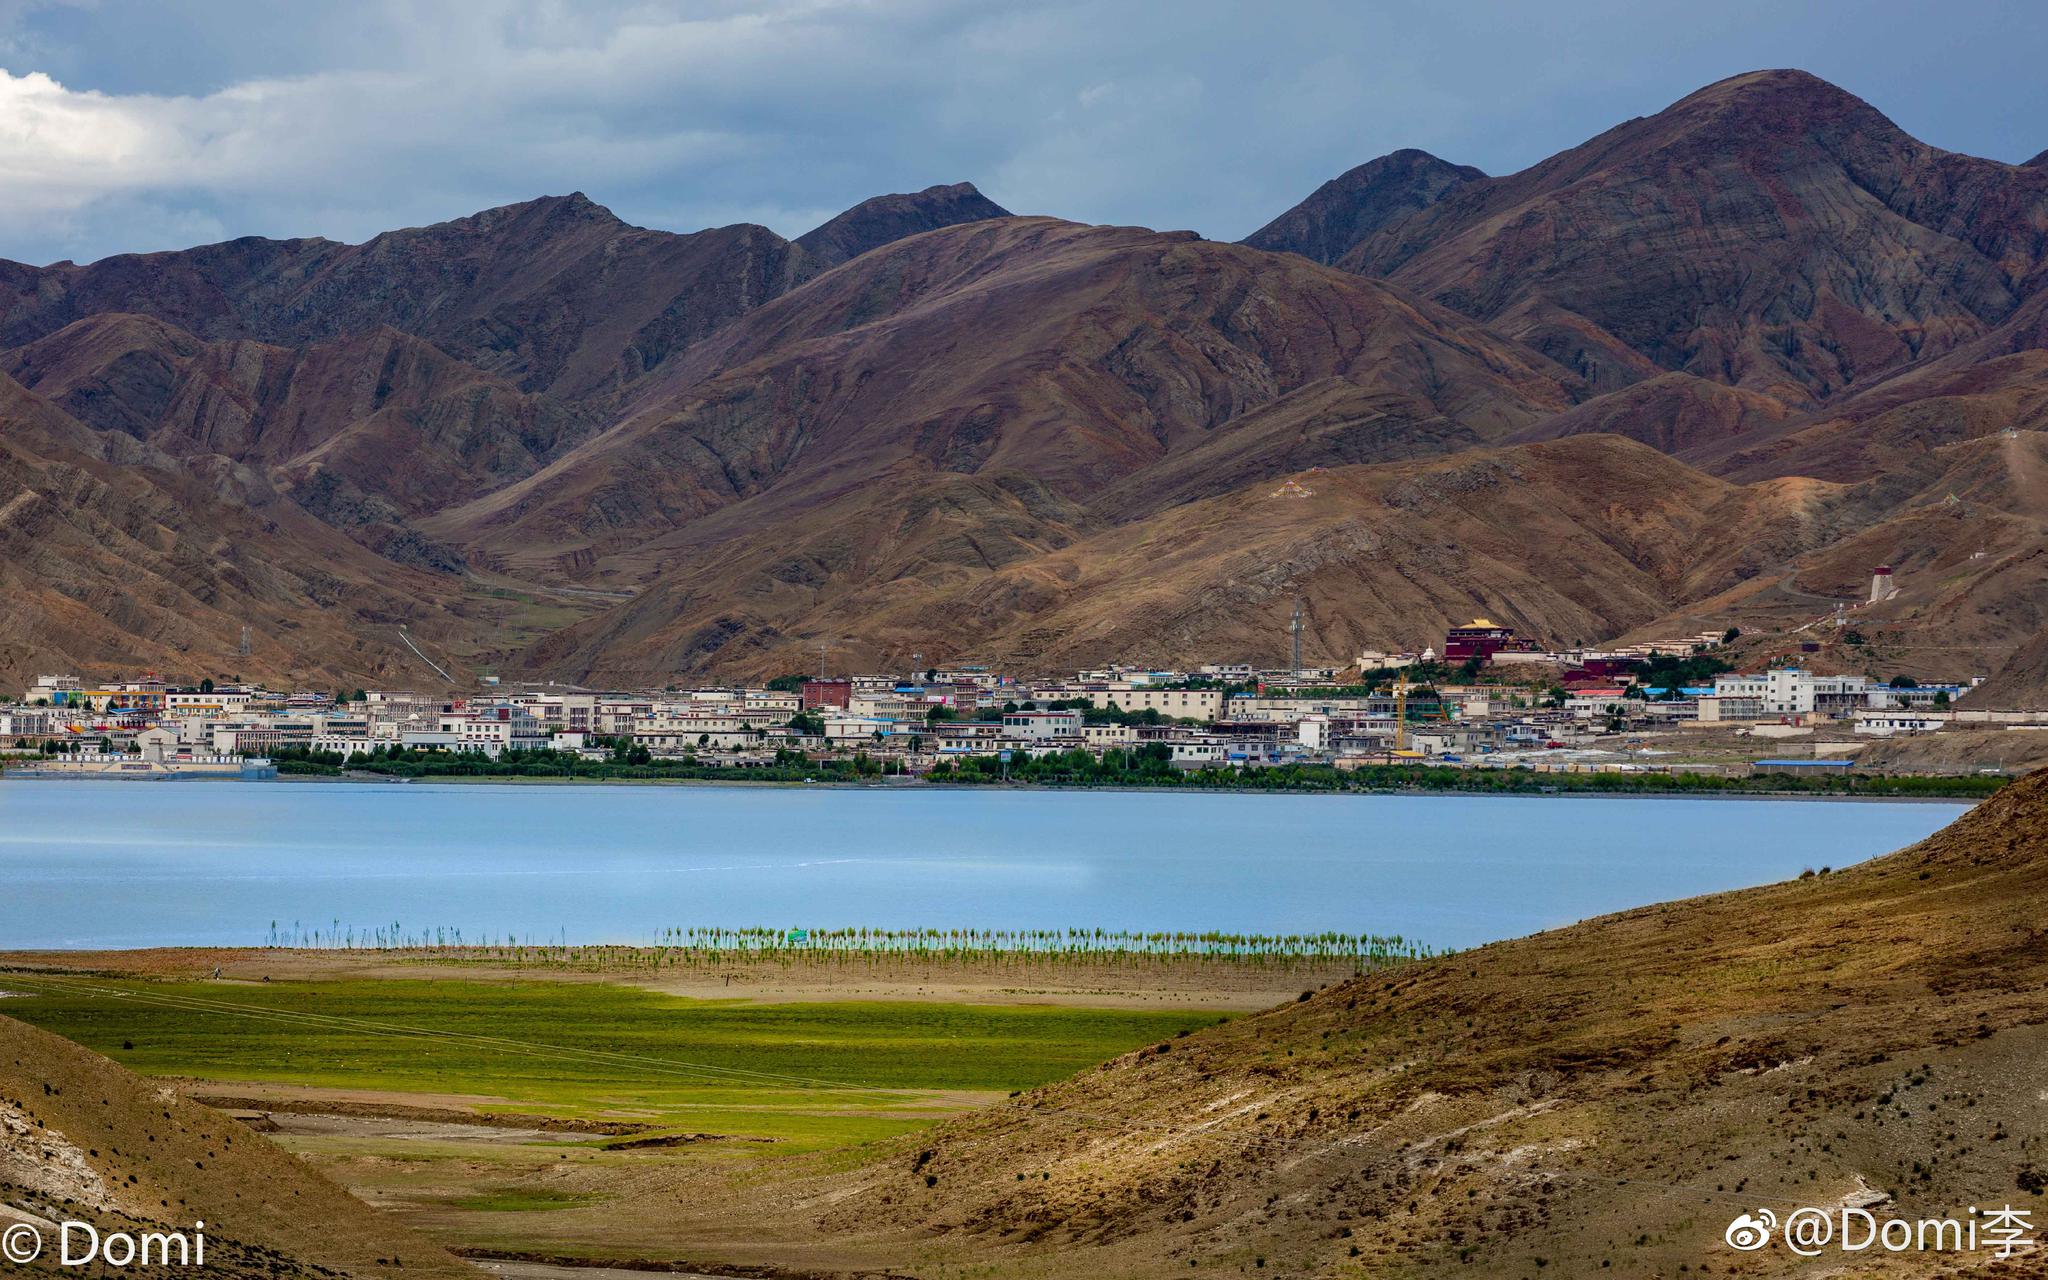 【携程攻略】叶城锡提亚谜城景区景点,老夫子：《往事逾千年·昆仑文化第一城2⃣️》一一新疆喀什…